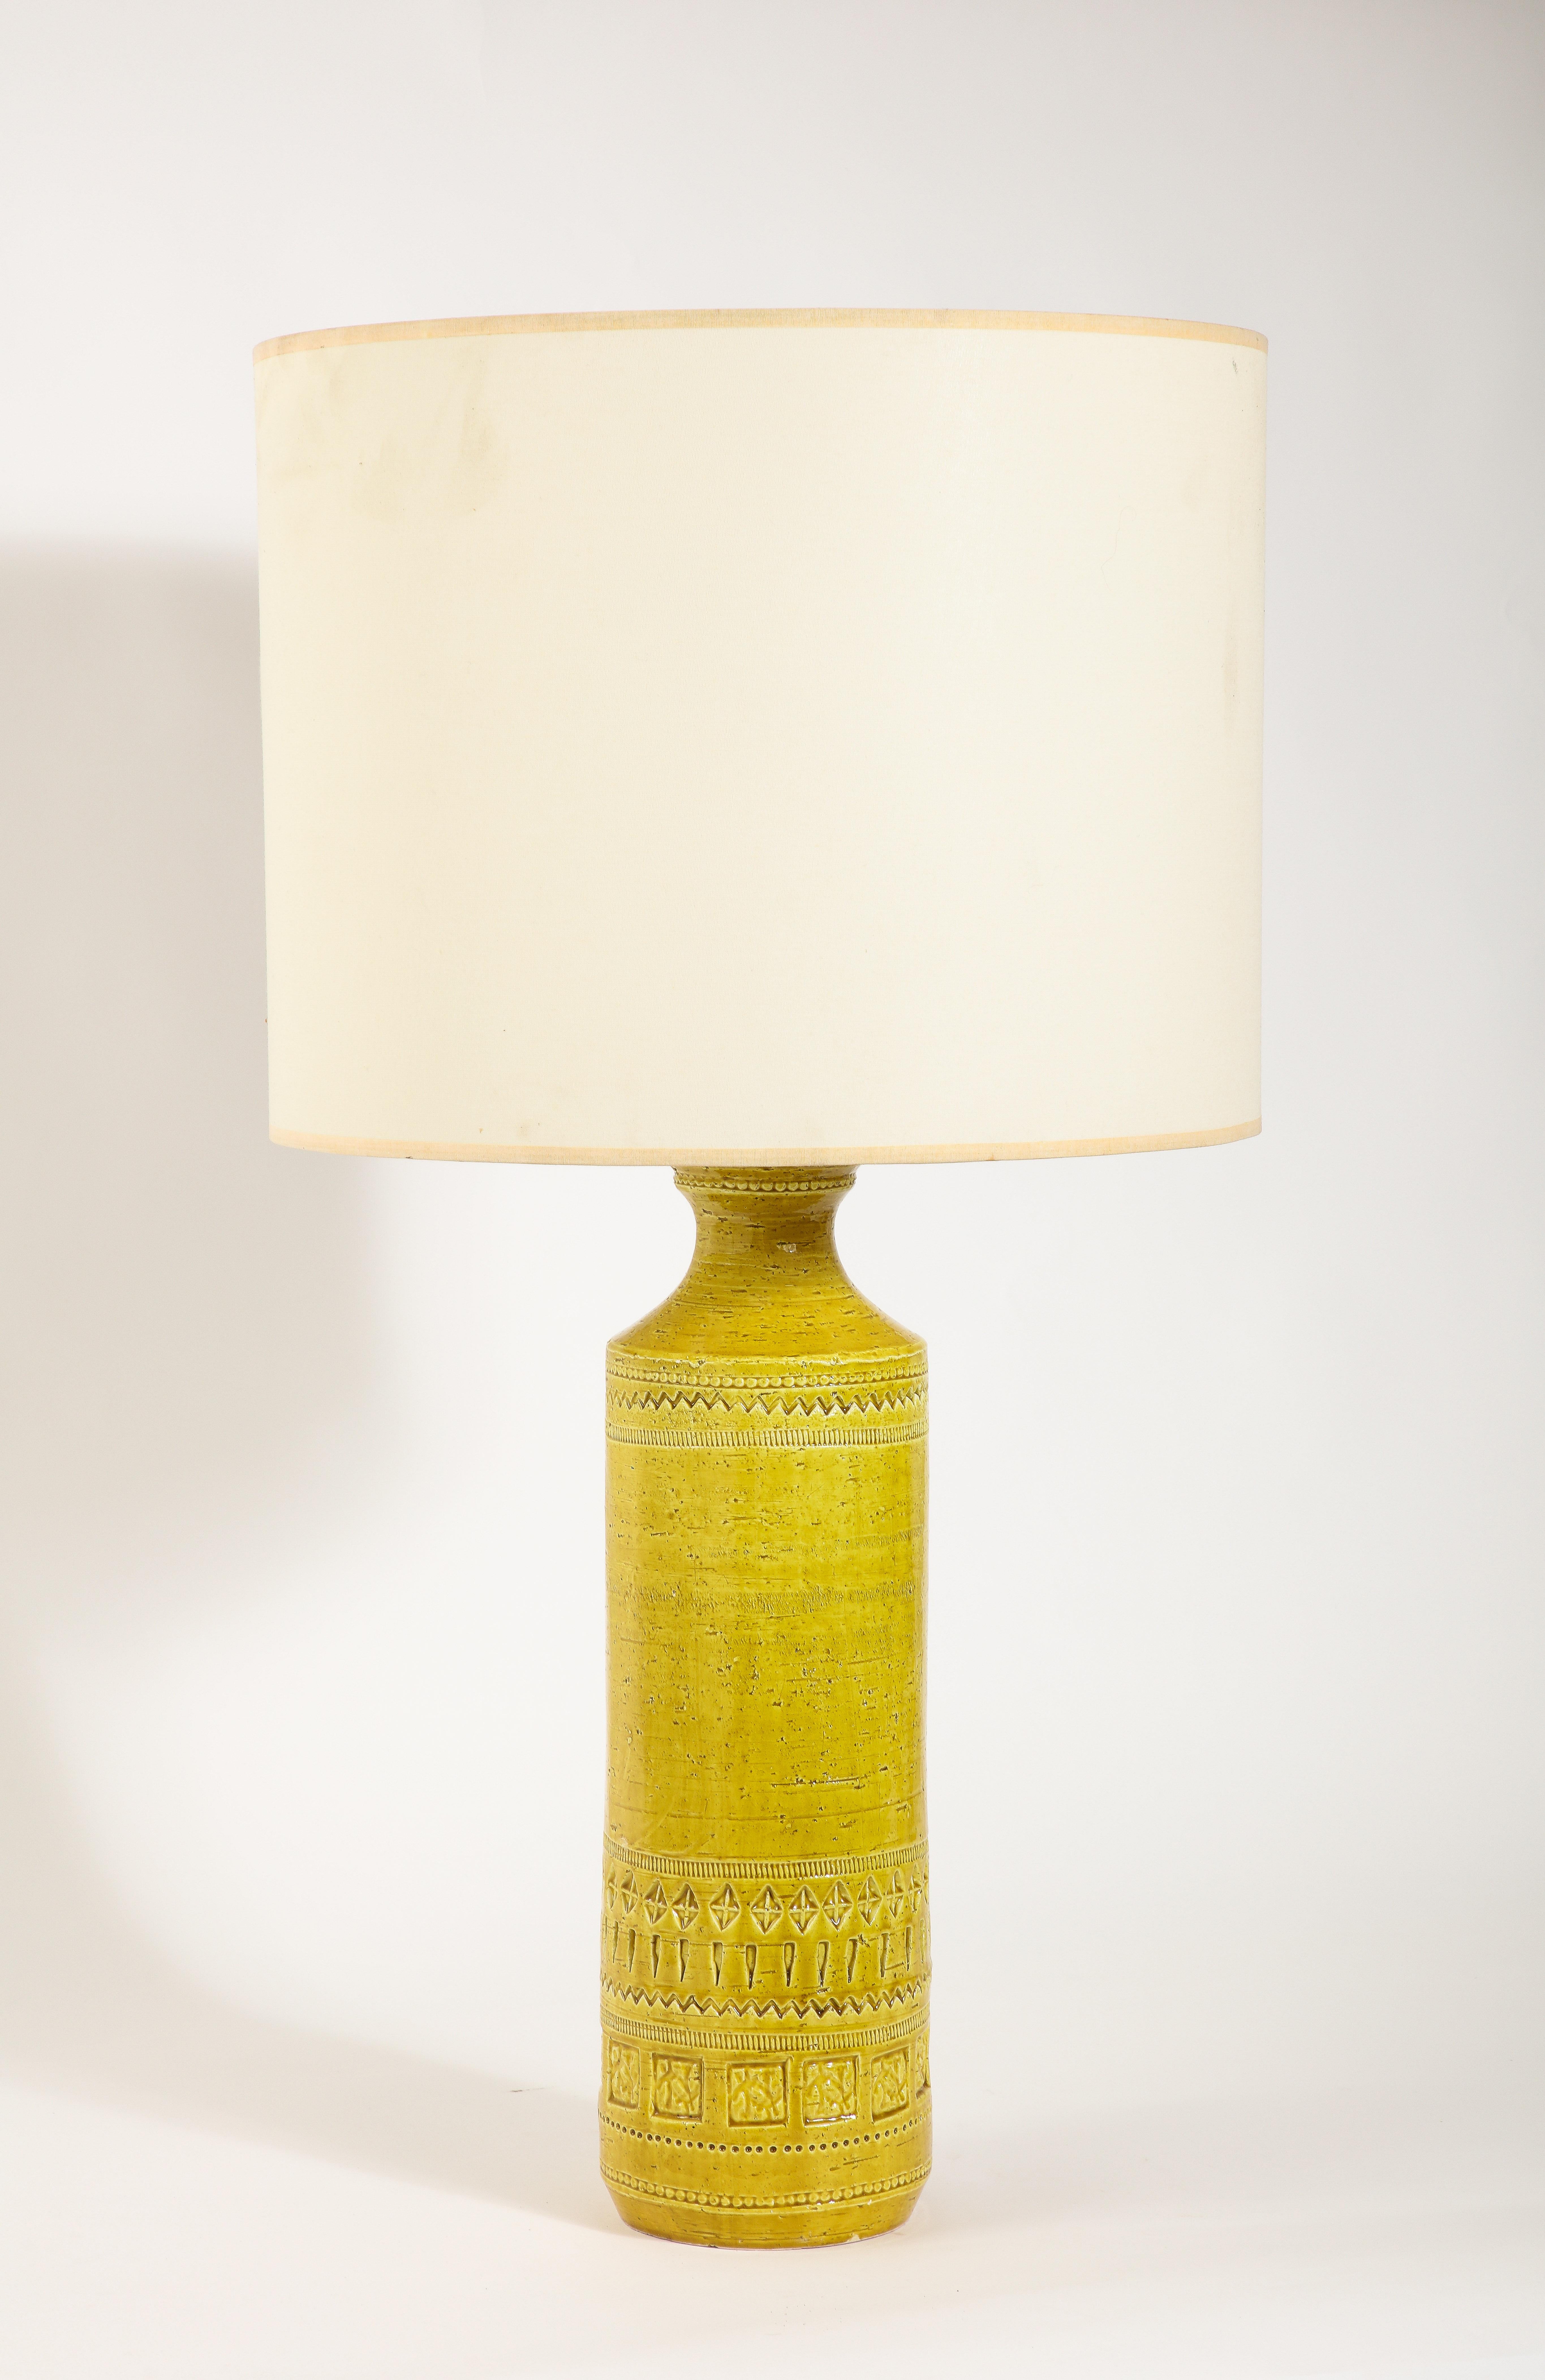 Große Tischlampen aus Keramik mit reichhaltiger gelber Glasur und Gravur.

Nur 25x7 Basis